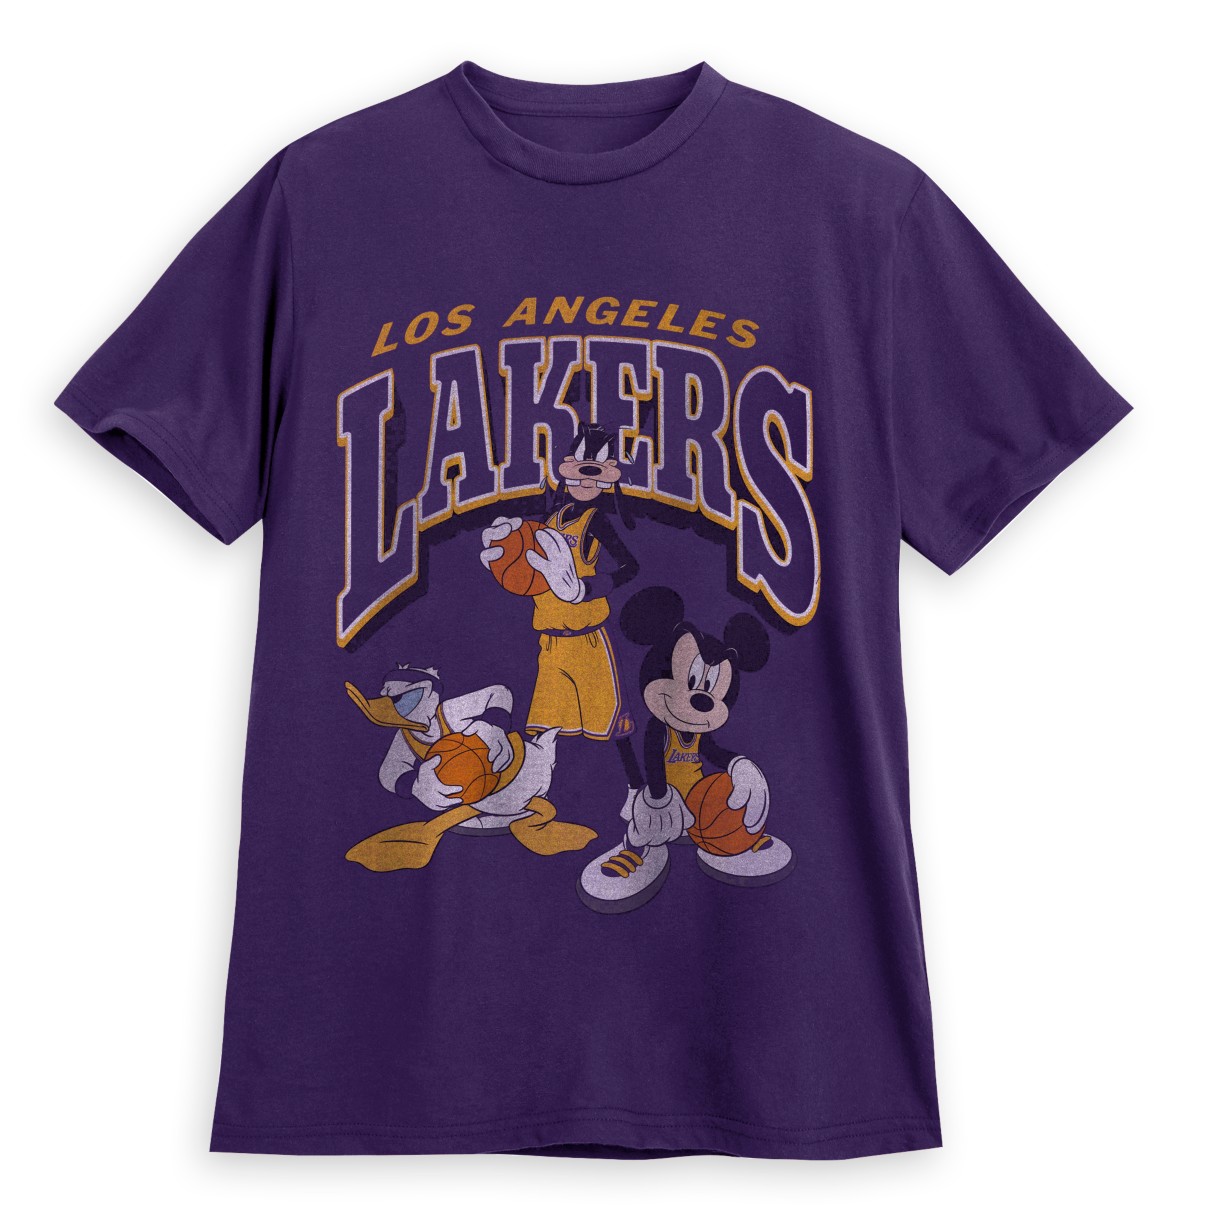 Los Angeles Lakers Junk Food Disney Vintage Mickey Baller shirt